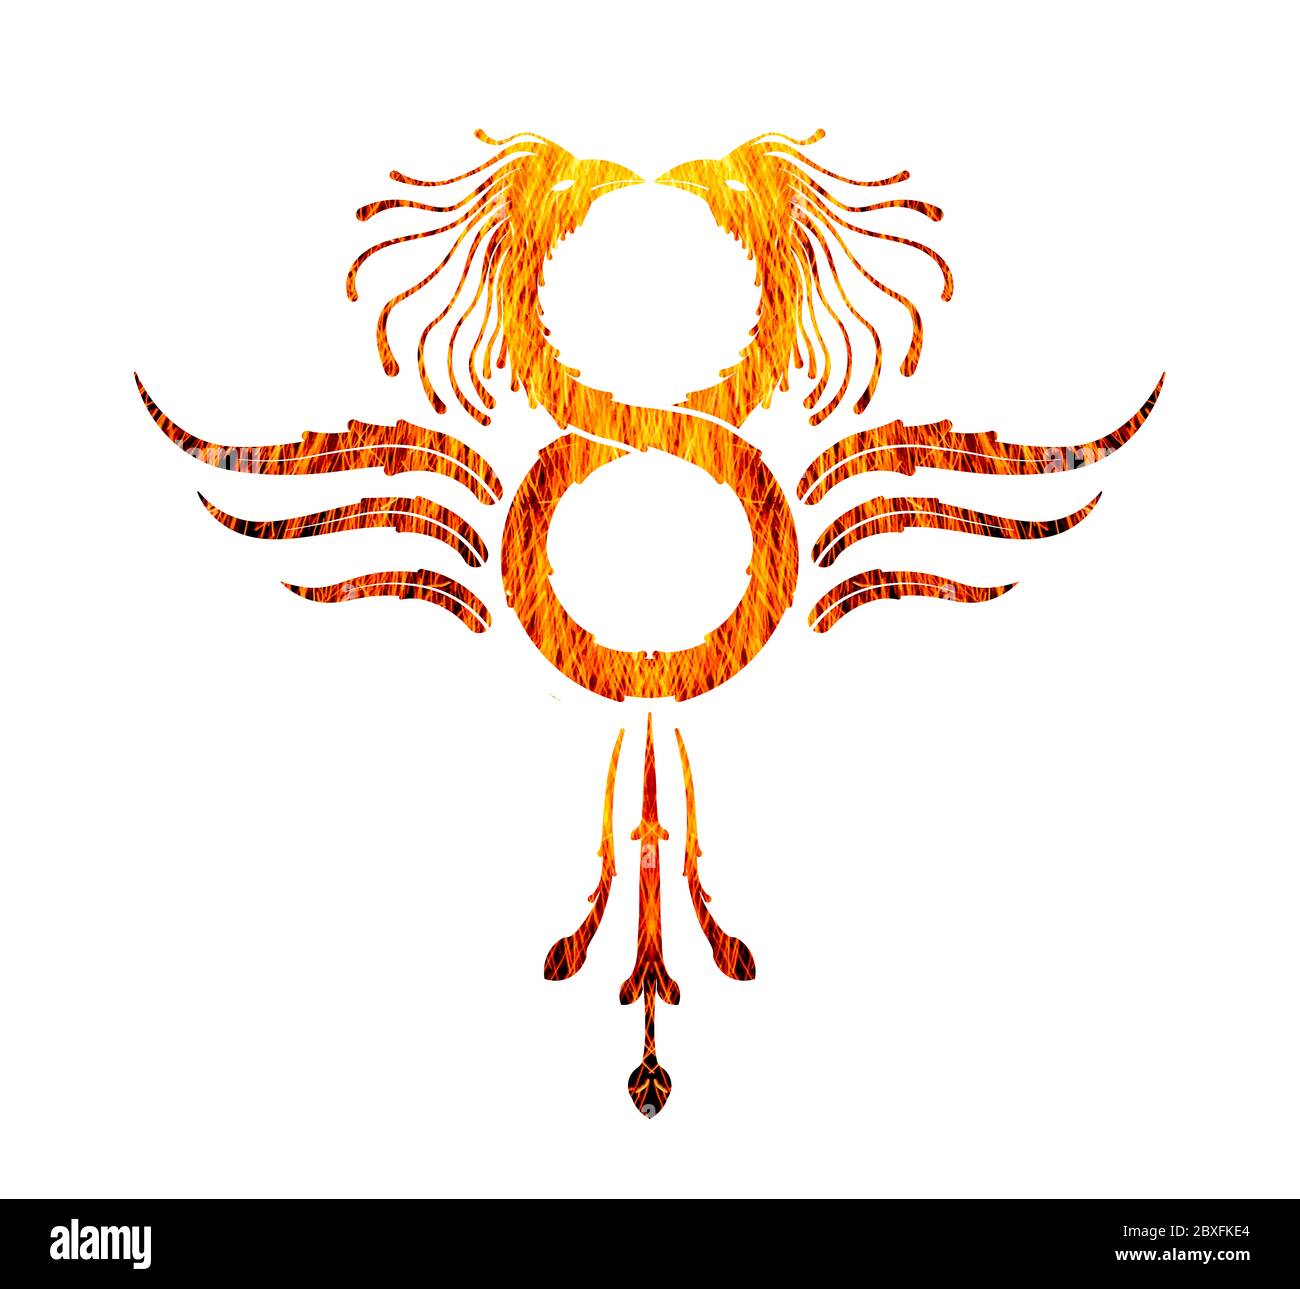 Phoenix symbole de l'infini feu texturé sur fond blanc Banque D'Images